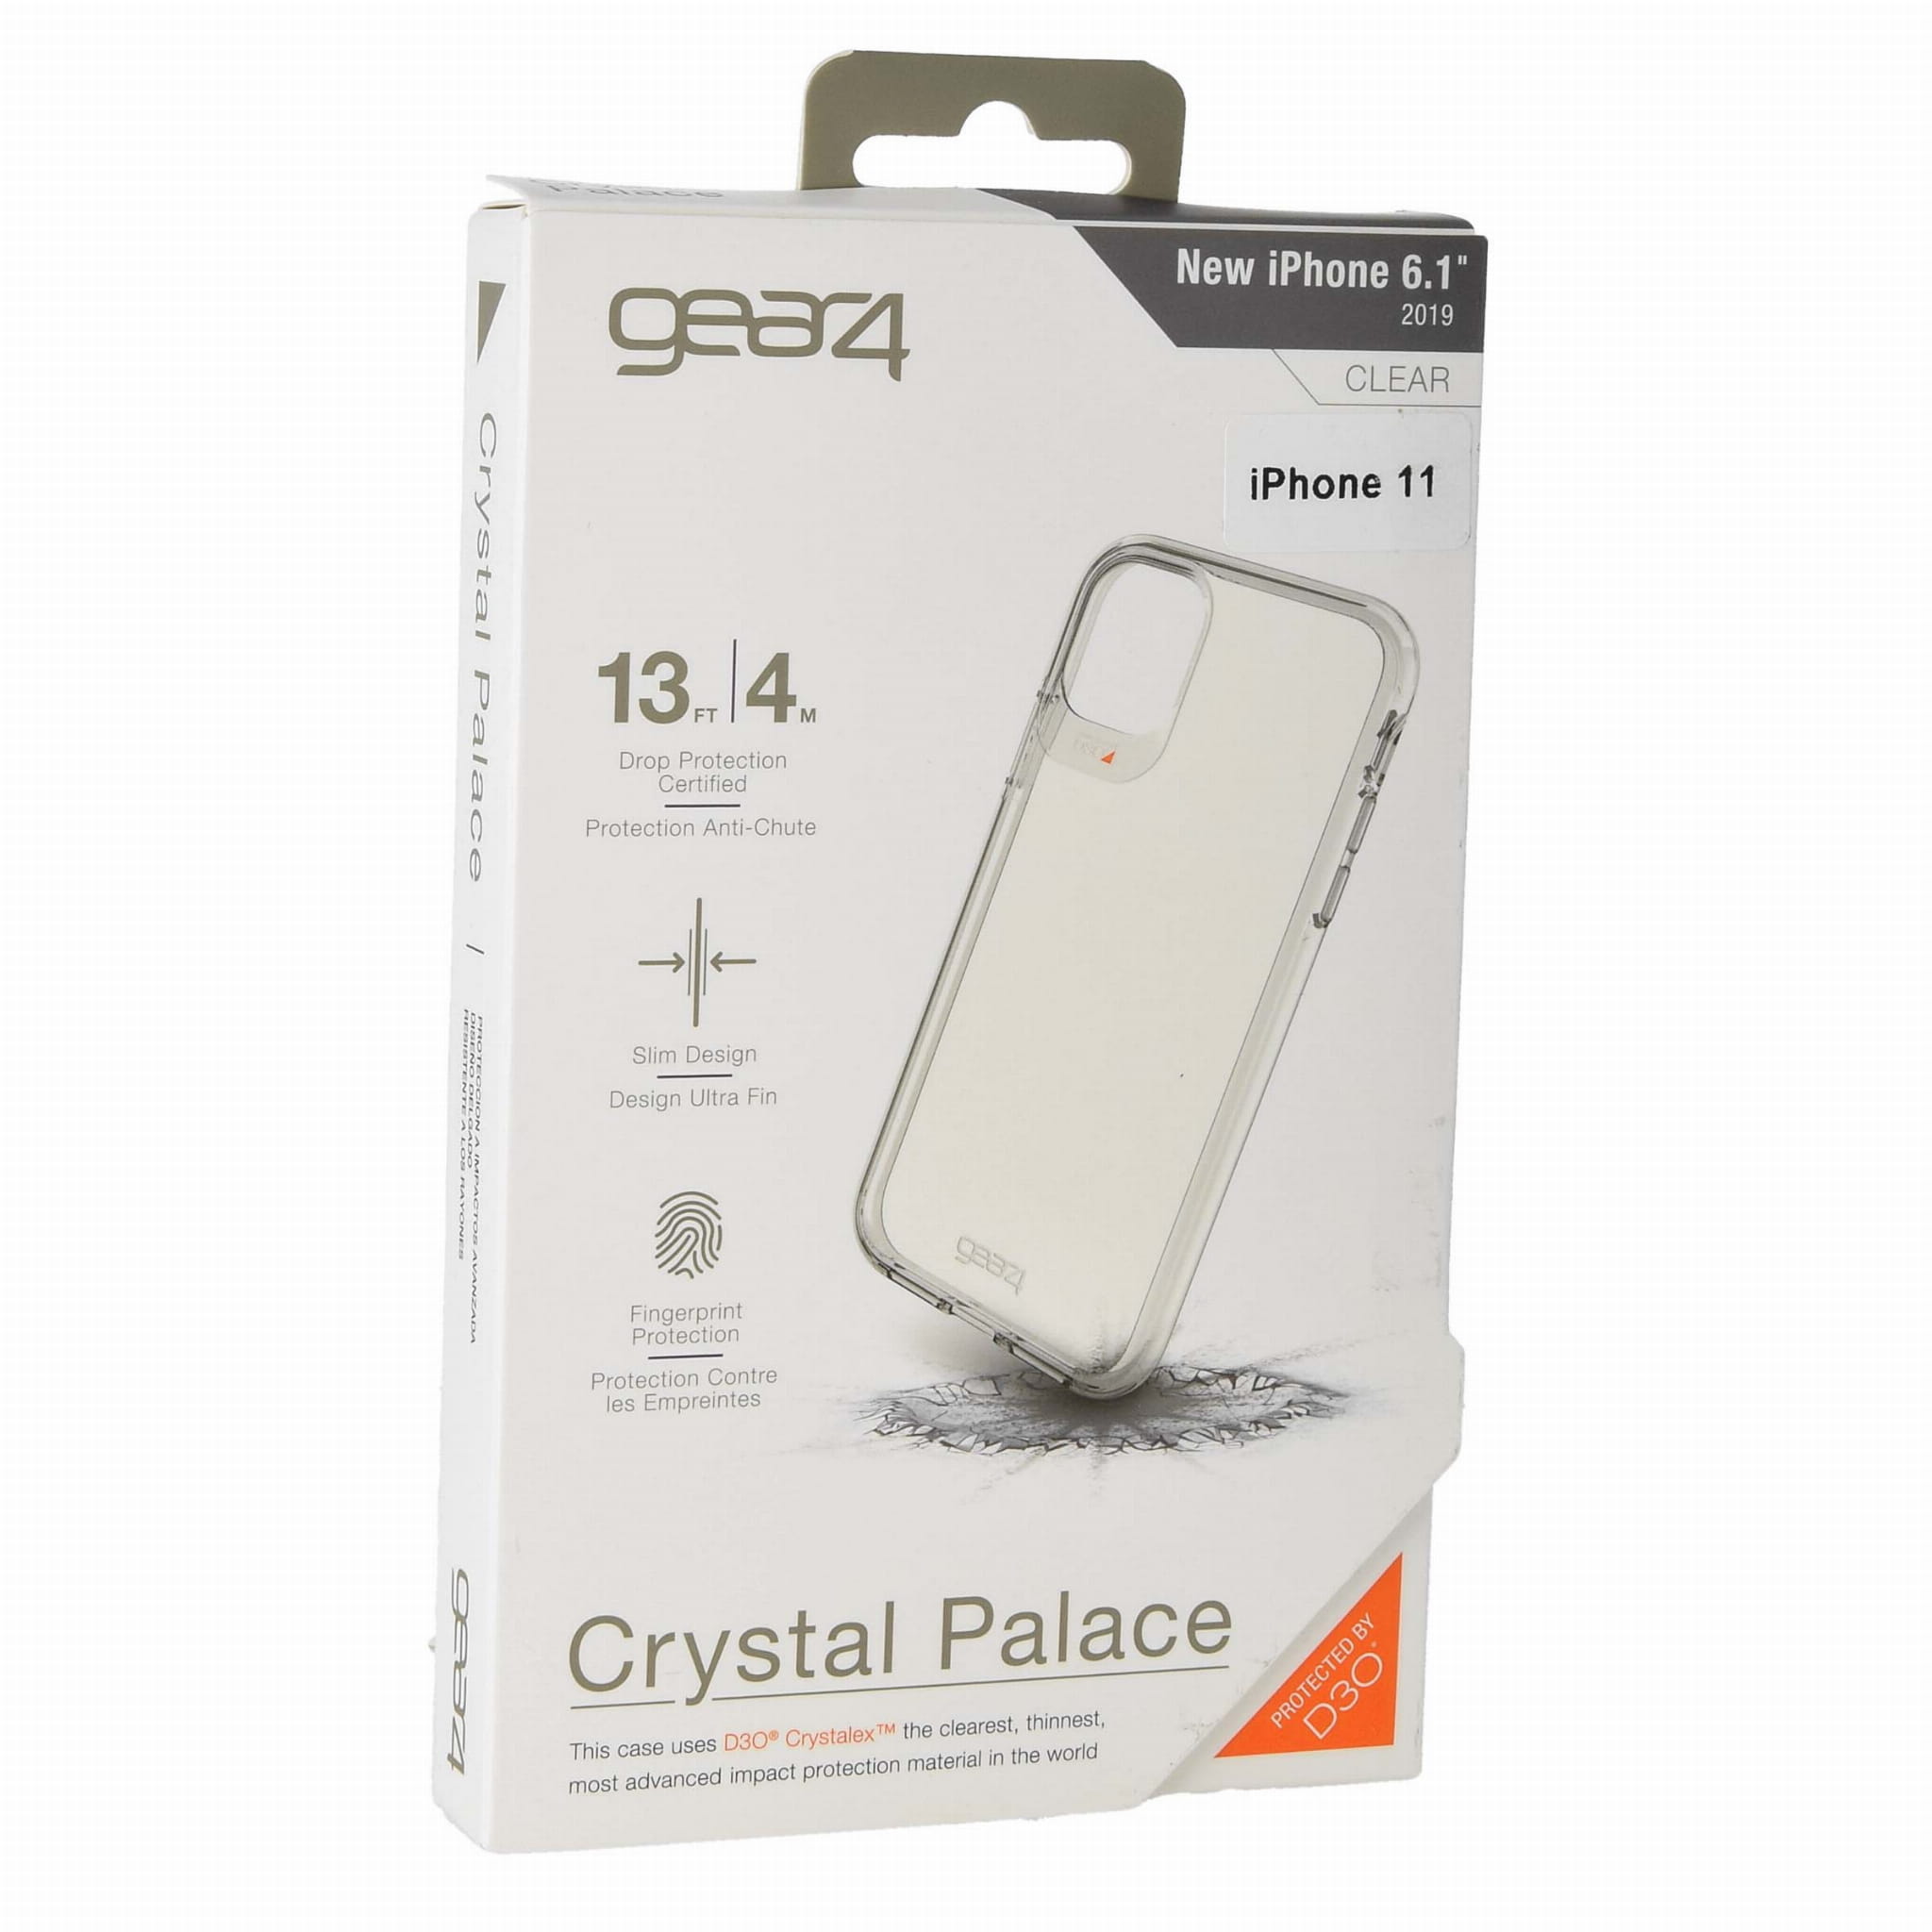 Schutzhülle Gear4 aus der Serie Crystal Palace für iPhone 11 transparent.